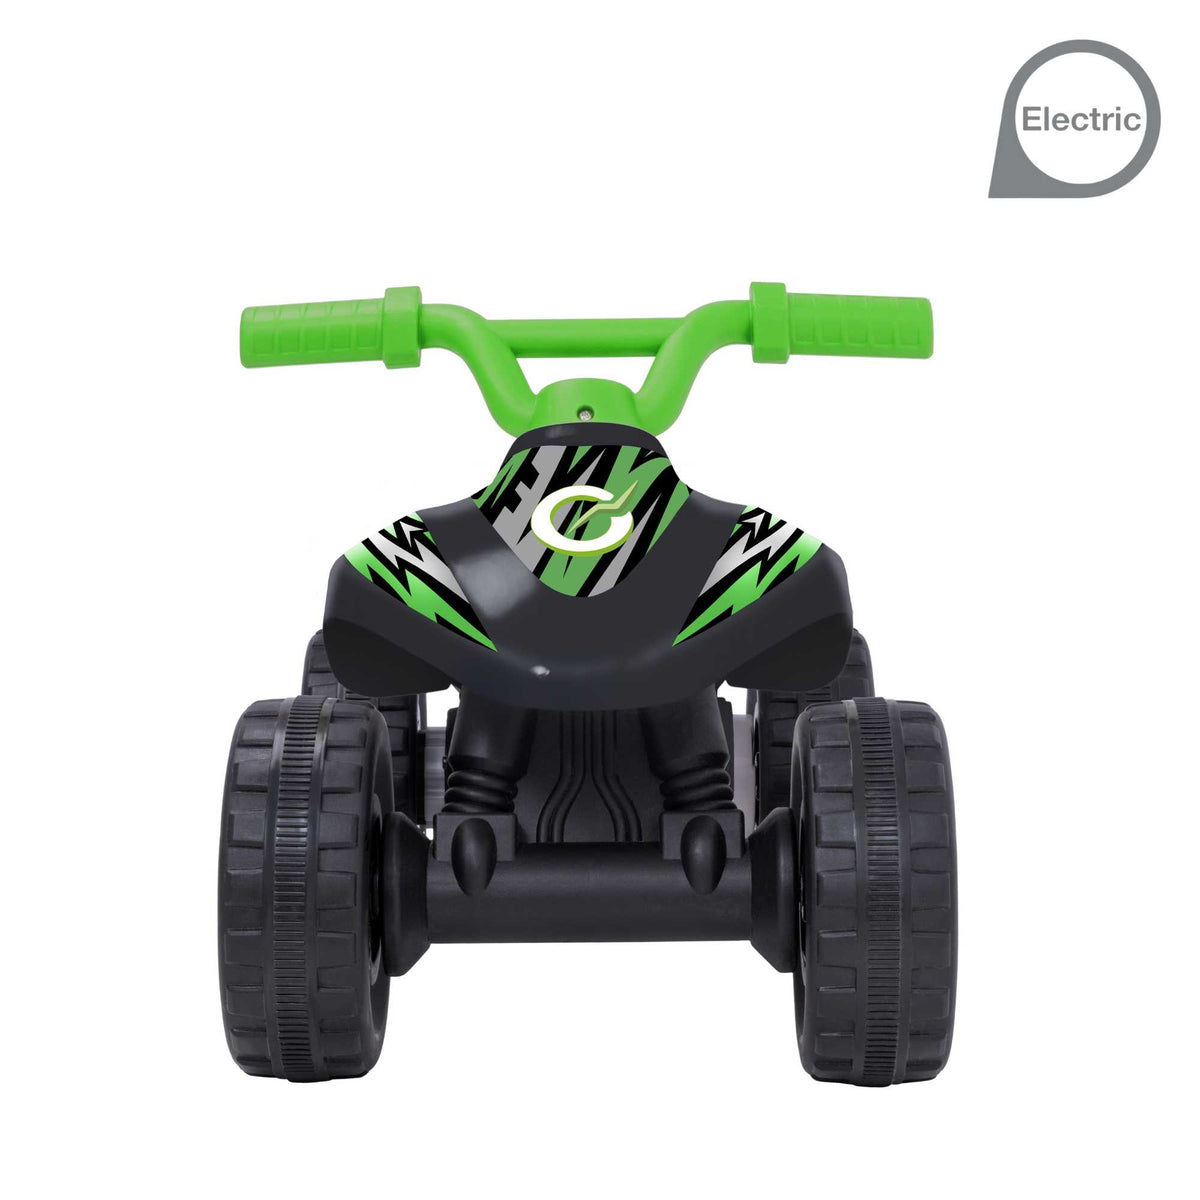 Evo 6V Kids Electric Ride On | Venom Racer Mini Quad